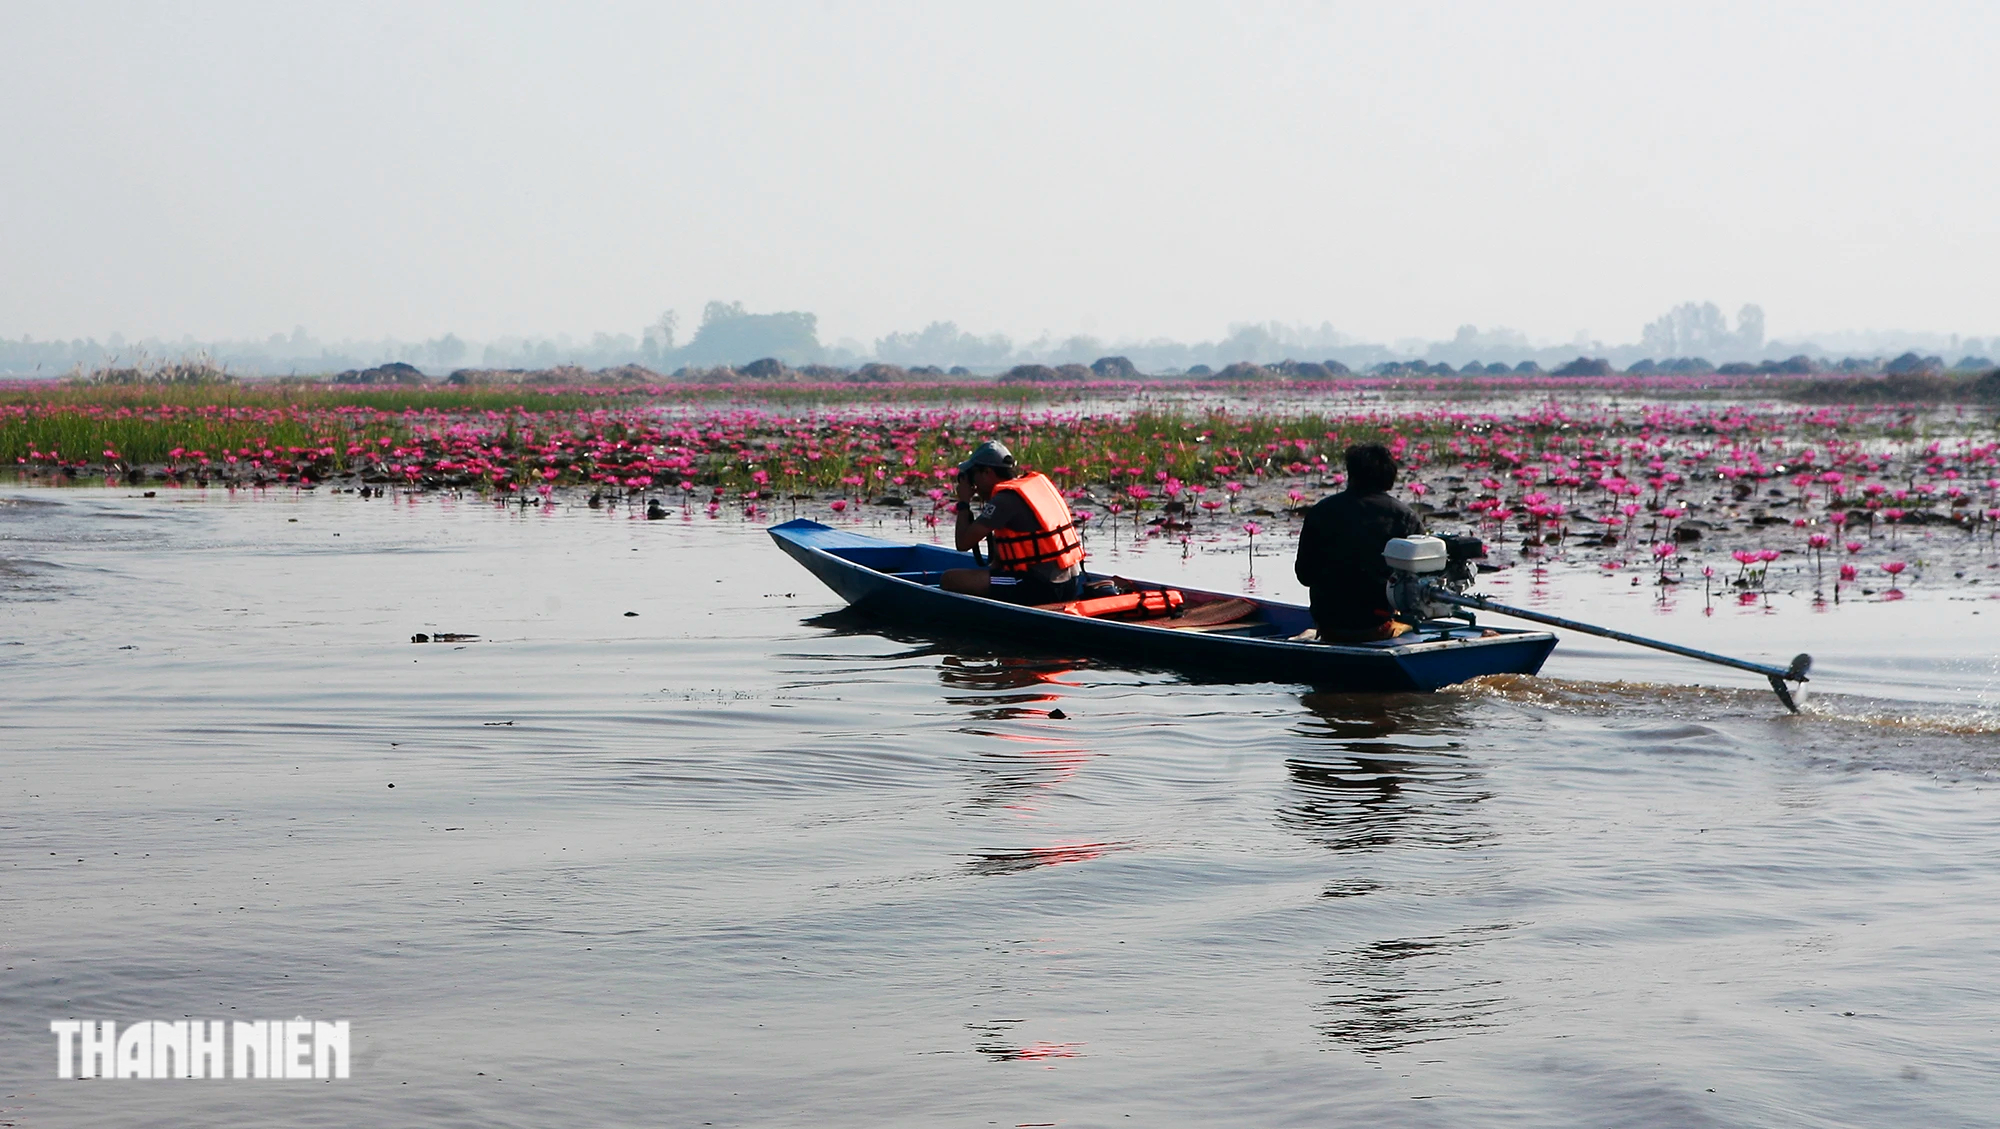 Biển hoa sen đỏ mê hoặc miền đông bắc Thái Lan - Ảnh 10.